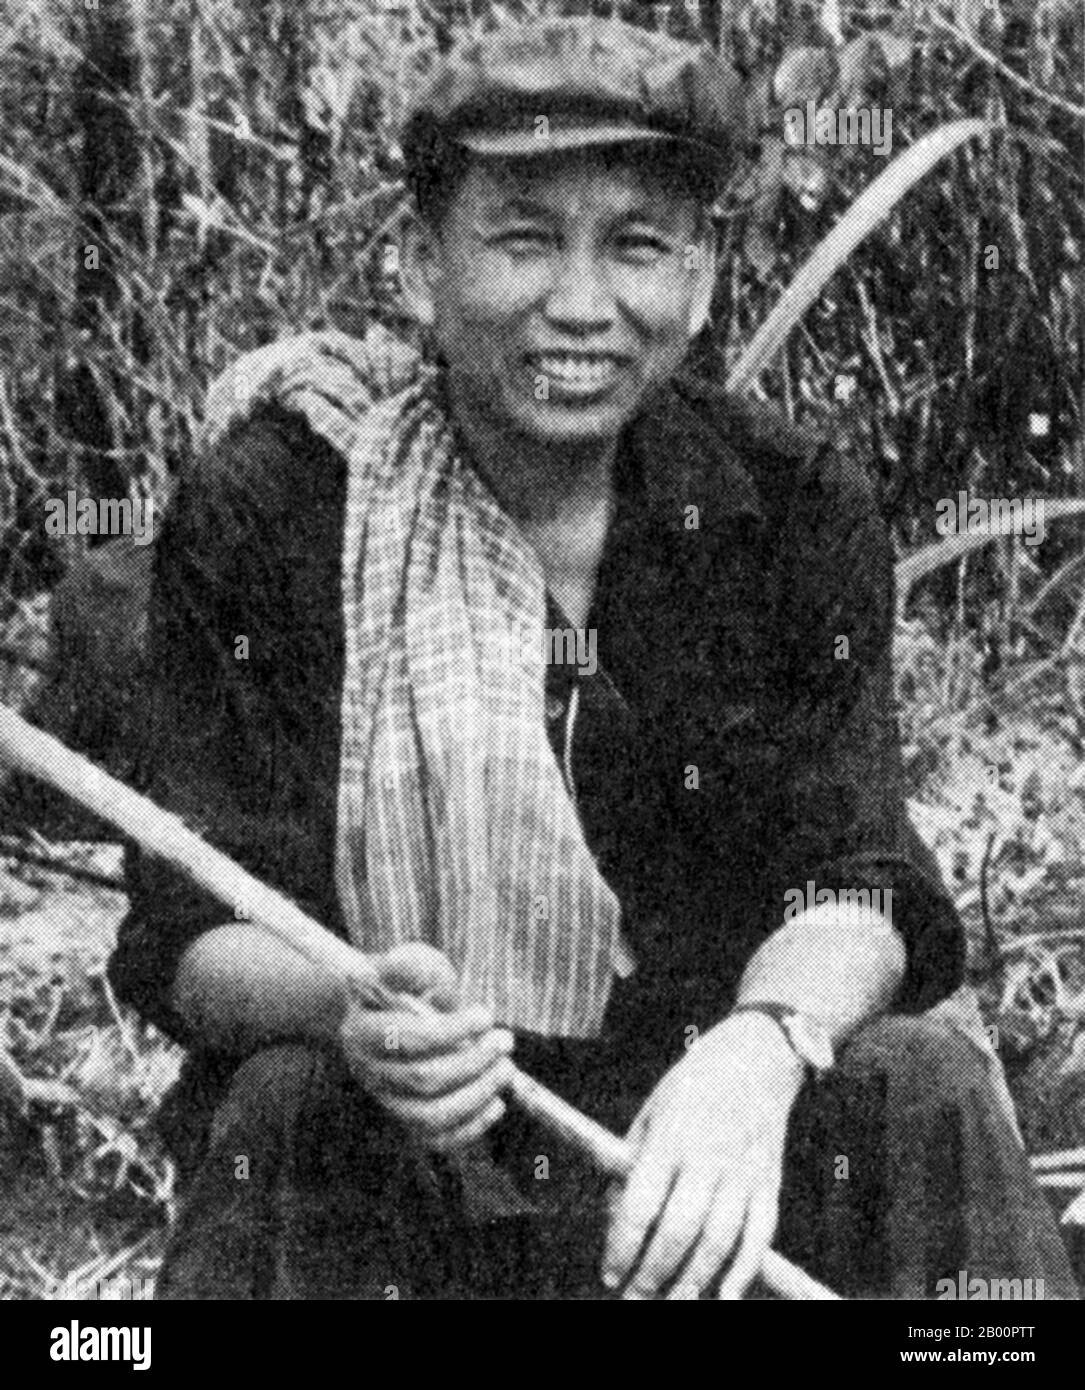 Camboya: Saloth SAR, alias Pol Pot, en una fotografía de propaganda de 1979 DK tomada en Camboya occidental. En una fotografía de propaganda planteada, Pol Pot, recientemente expulsado del poder por los vietnamitas, envía un mensaje a Hanoi y al mundo exterior: "Todavía estamos aquí y representamos una fuerza viable". Foto de stock